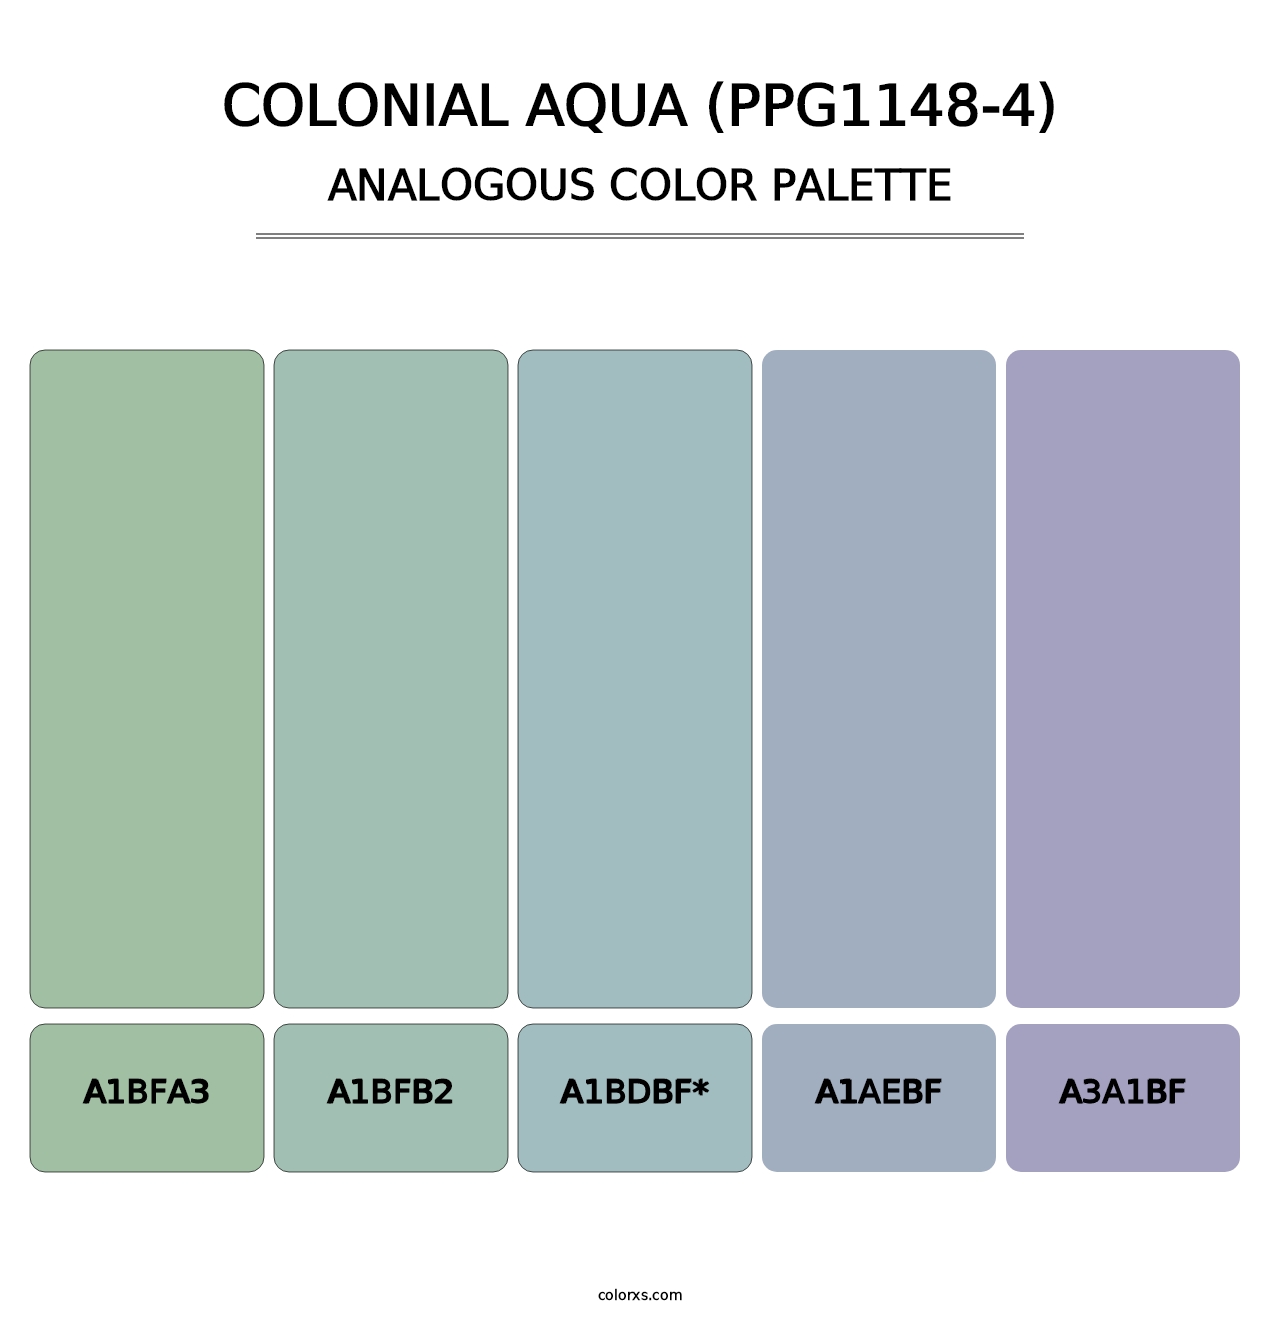 Colonial Aqua (PPG1148-4) - Analogous Color Palette